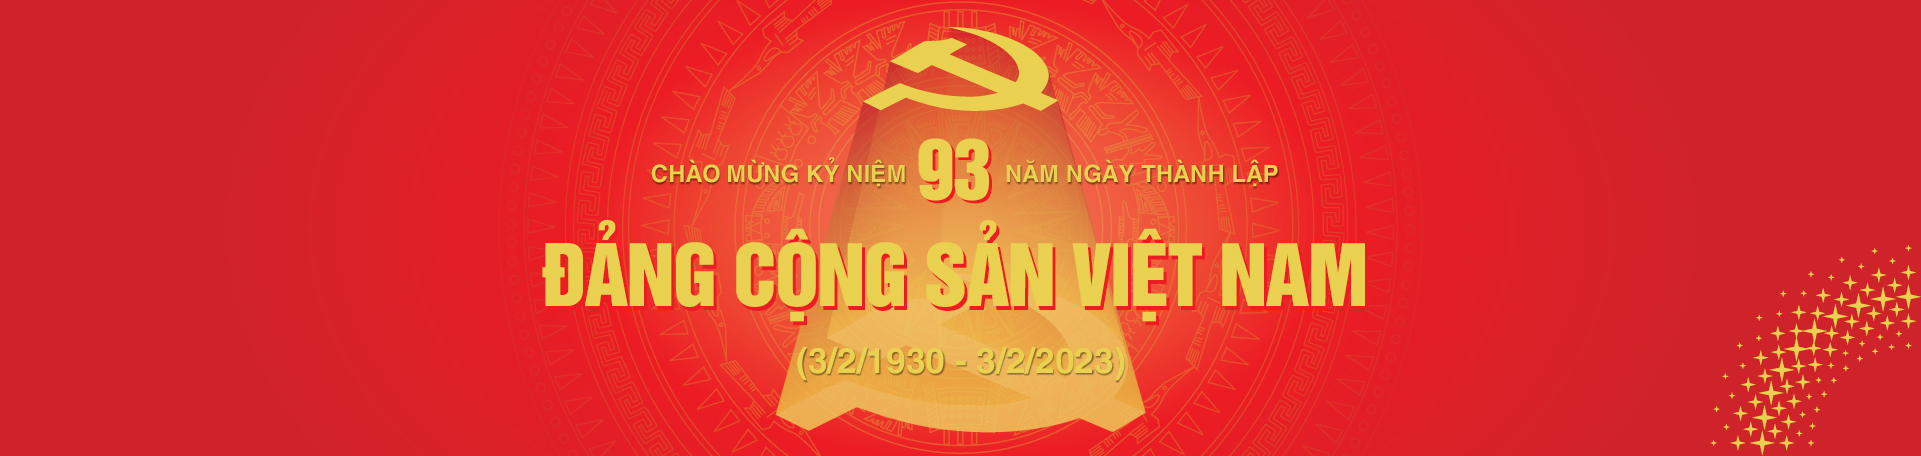 Banner kỷ niệm 93 năm thành lập